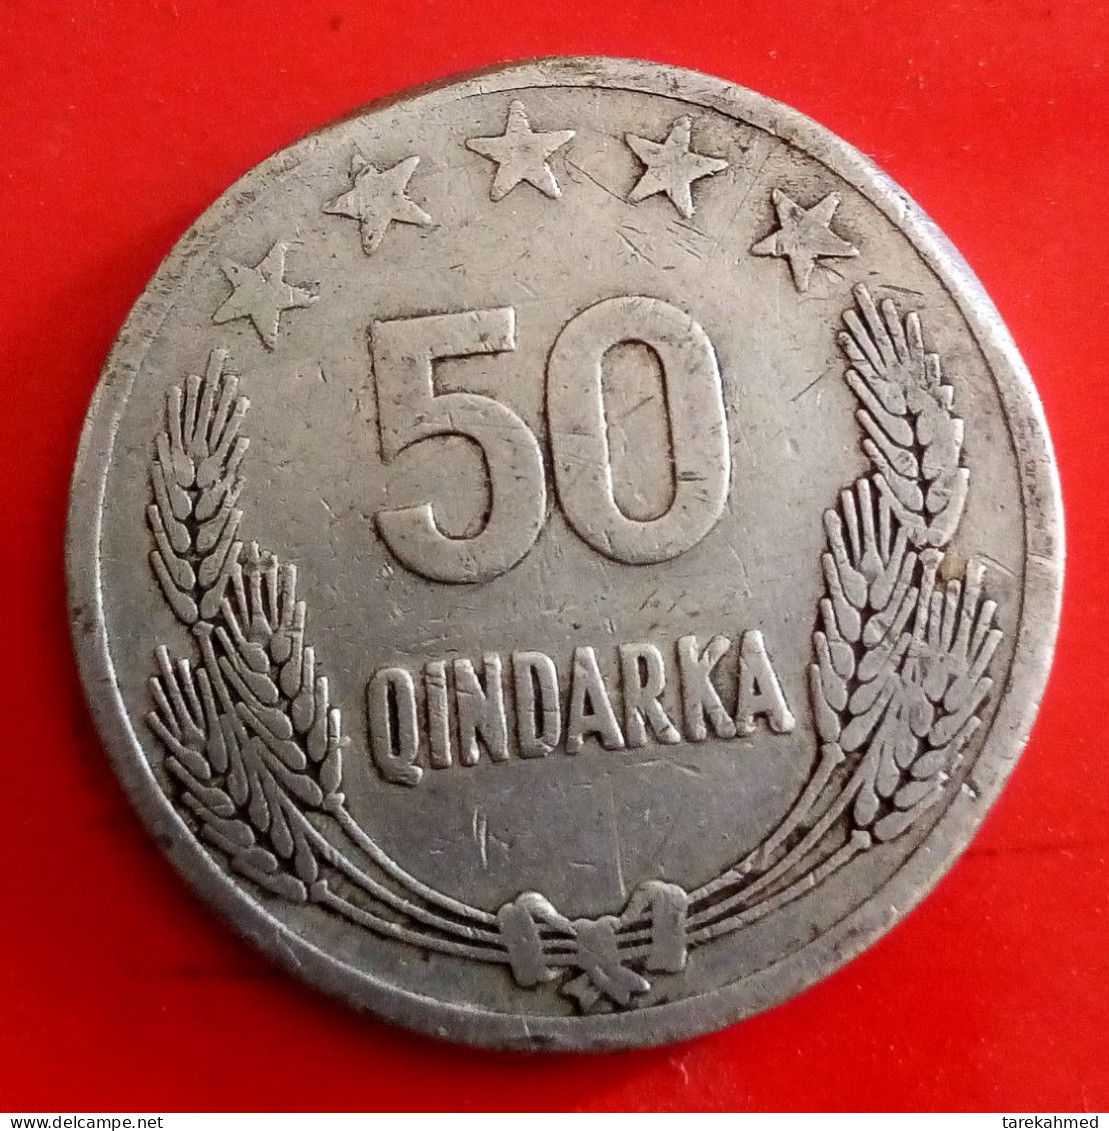 ALBANIA - 50 QINDARKA, 1964 - KM 42 - Agouz - Albanie